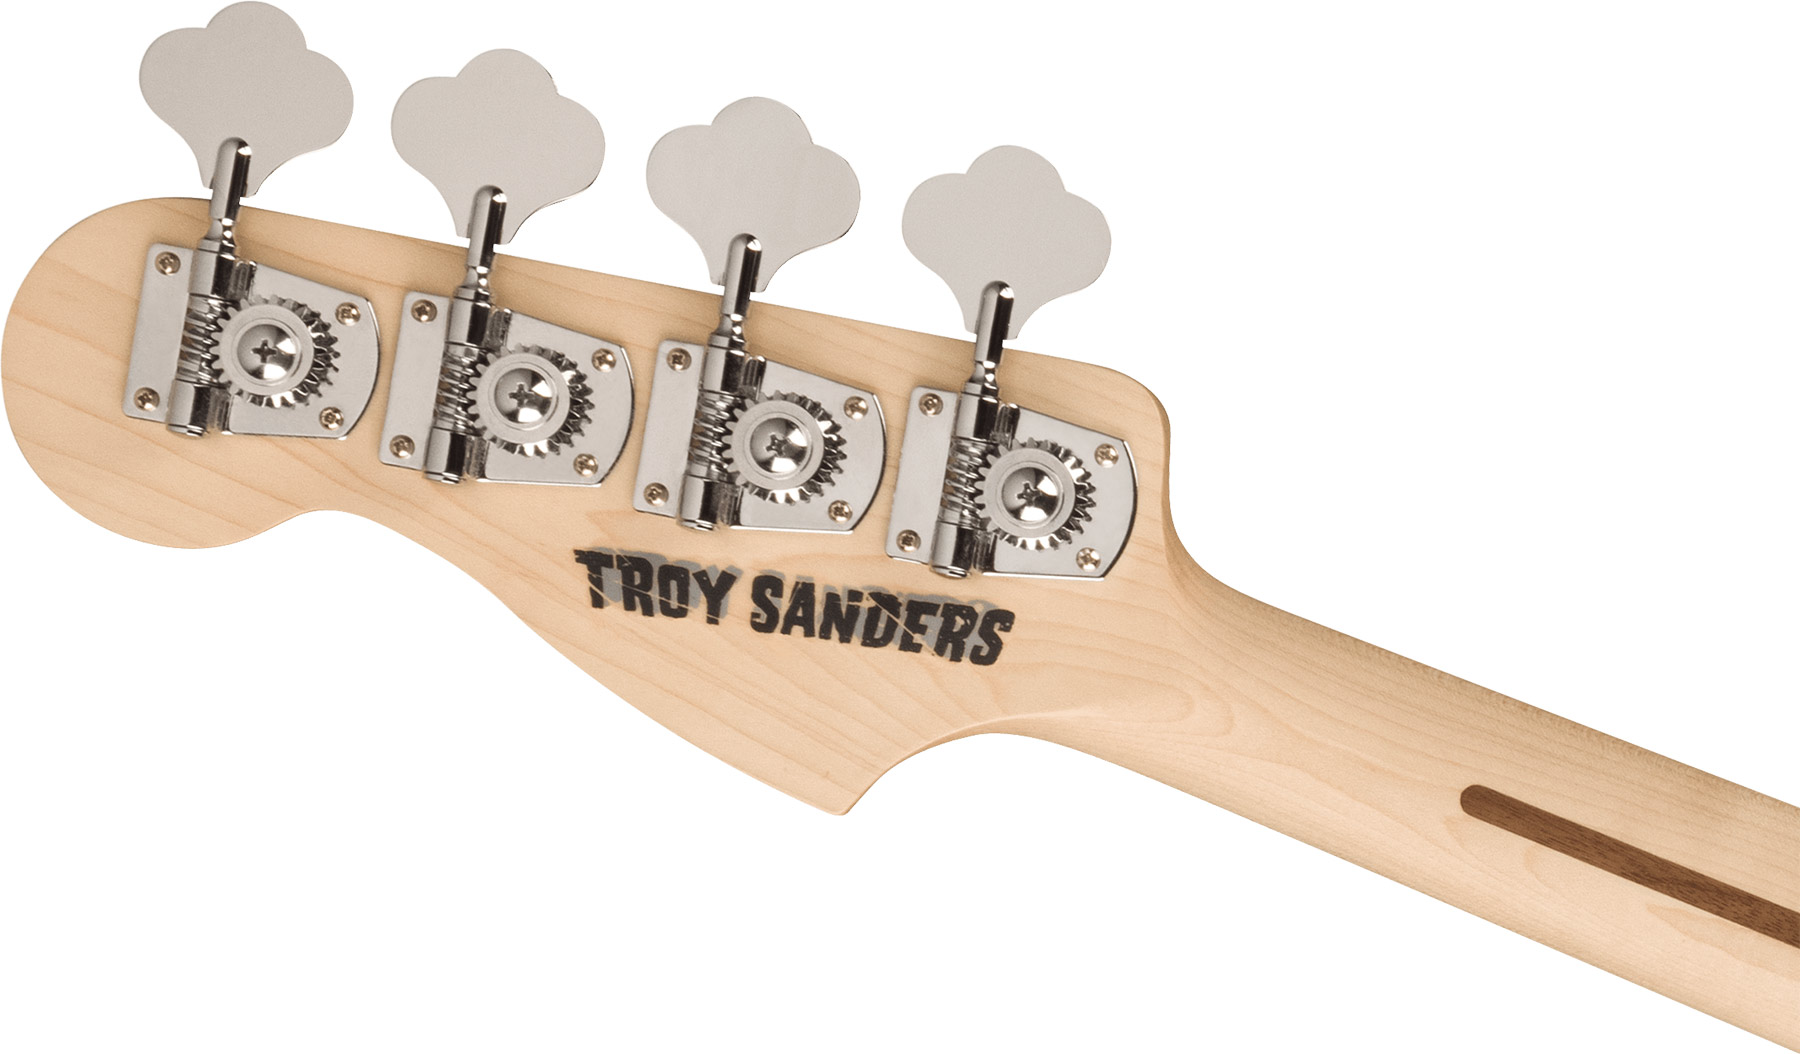 Fender Troy Sanders Precision Bass Signature Active Rw - Silverburst - Bajo eléctrico de cuerpo sólido - Variation 3